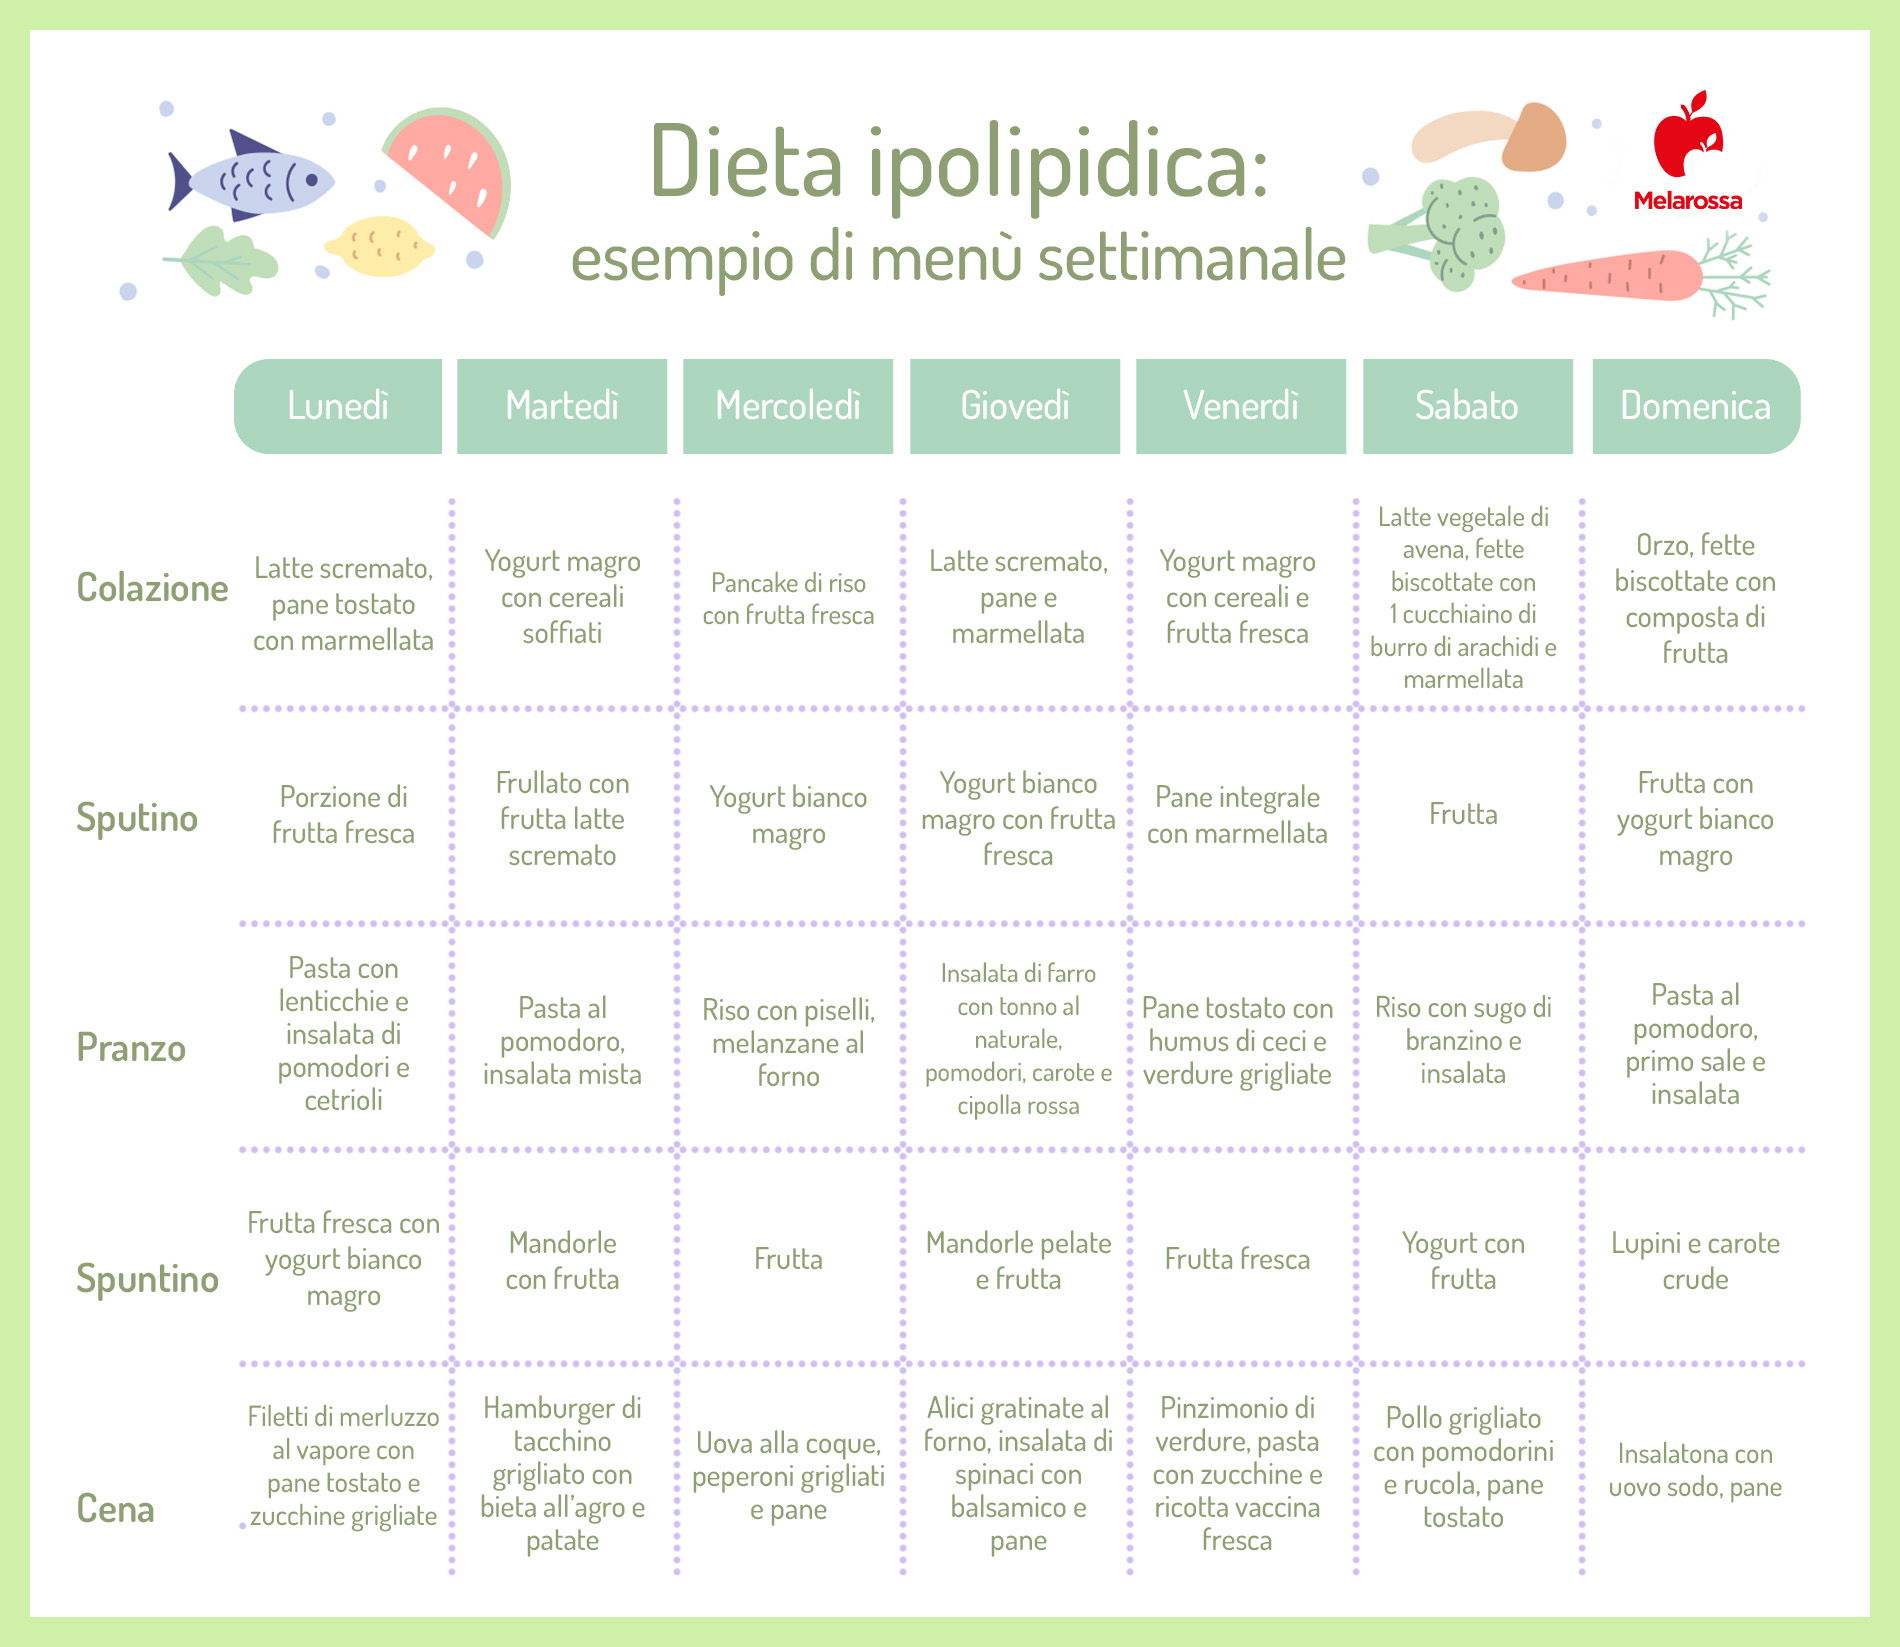 dieta ipolipidica: esempio di menù settimanale 